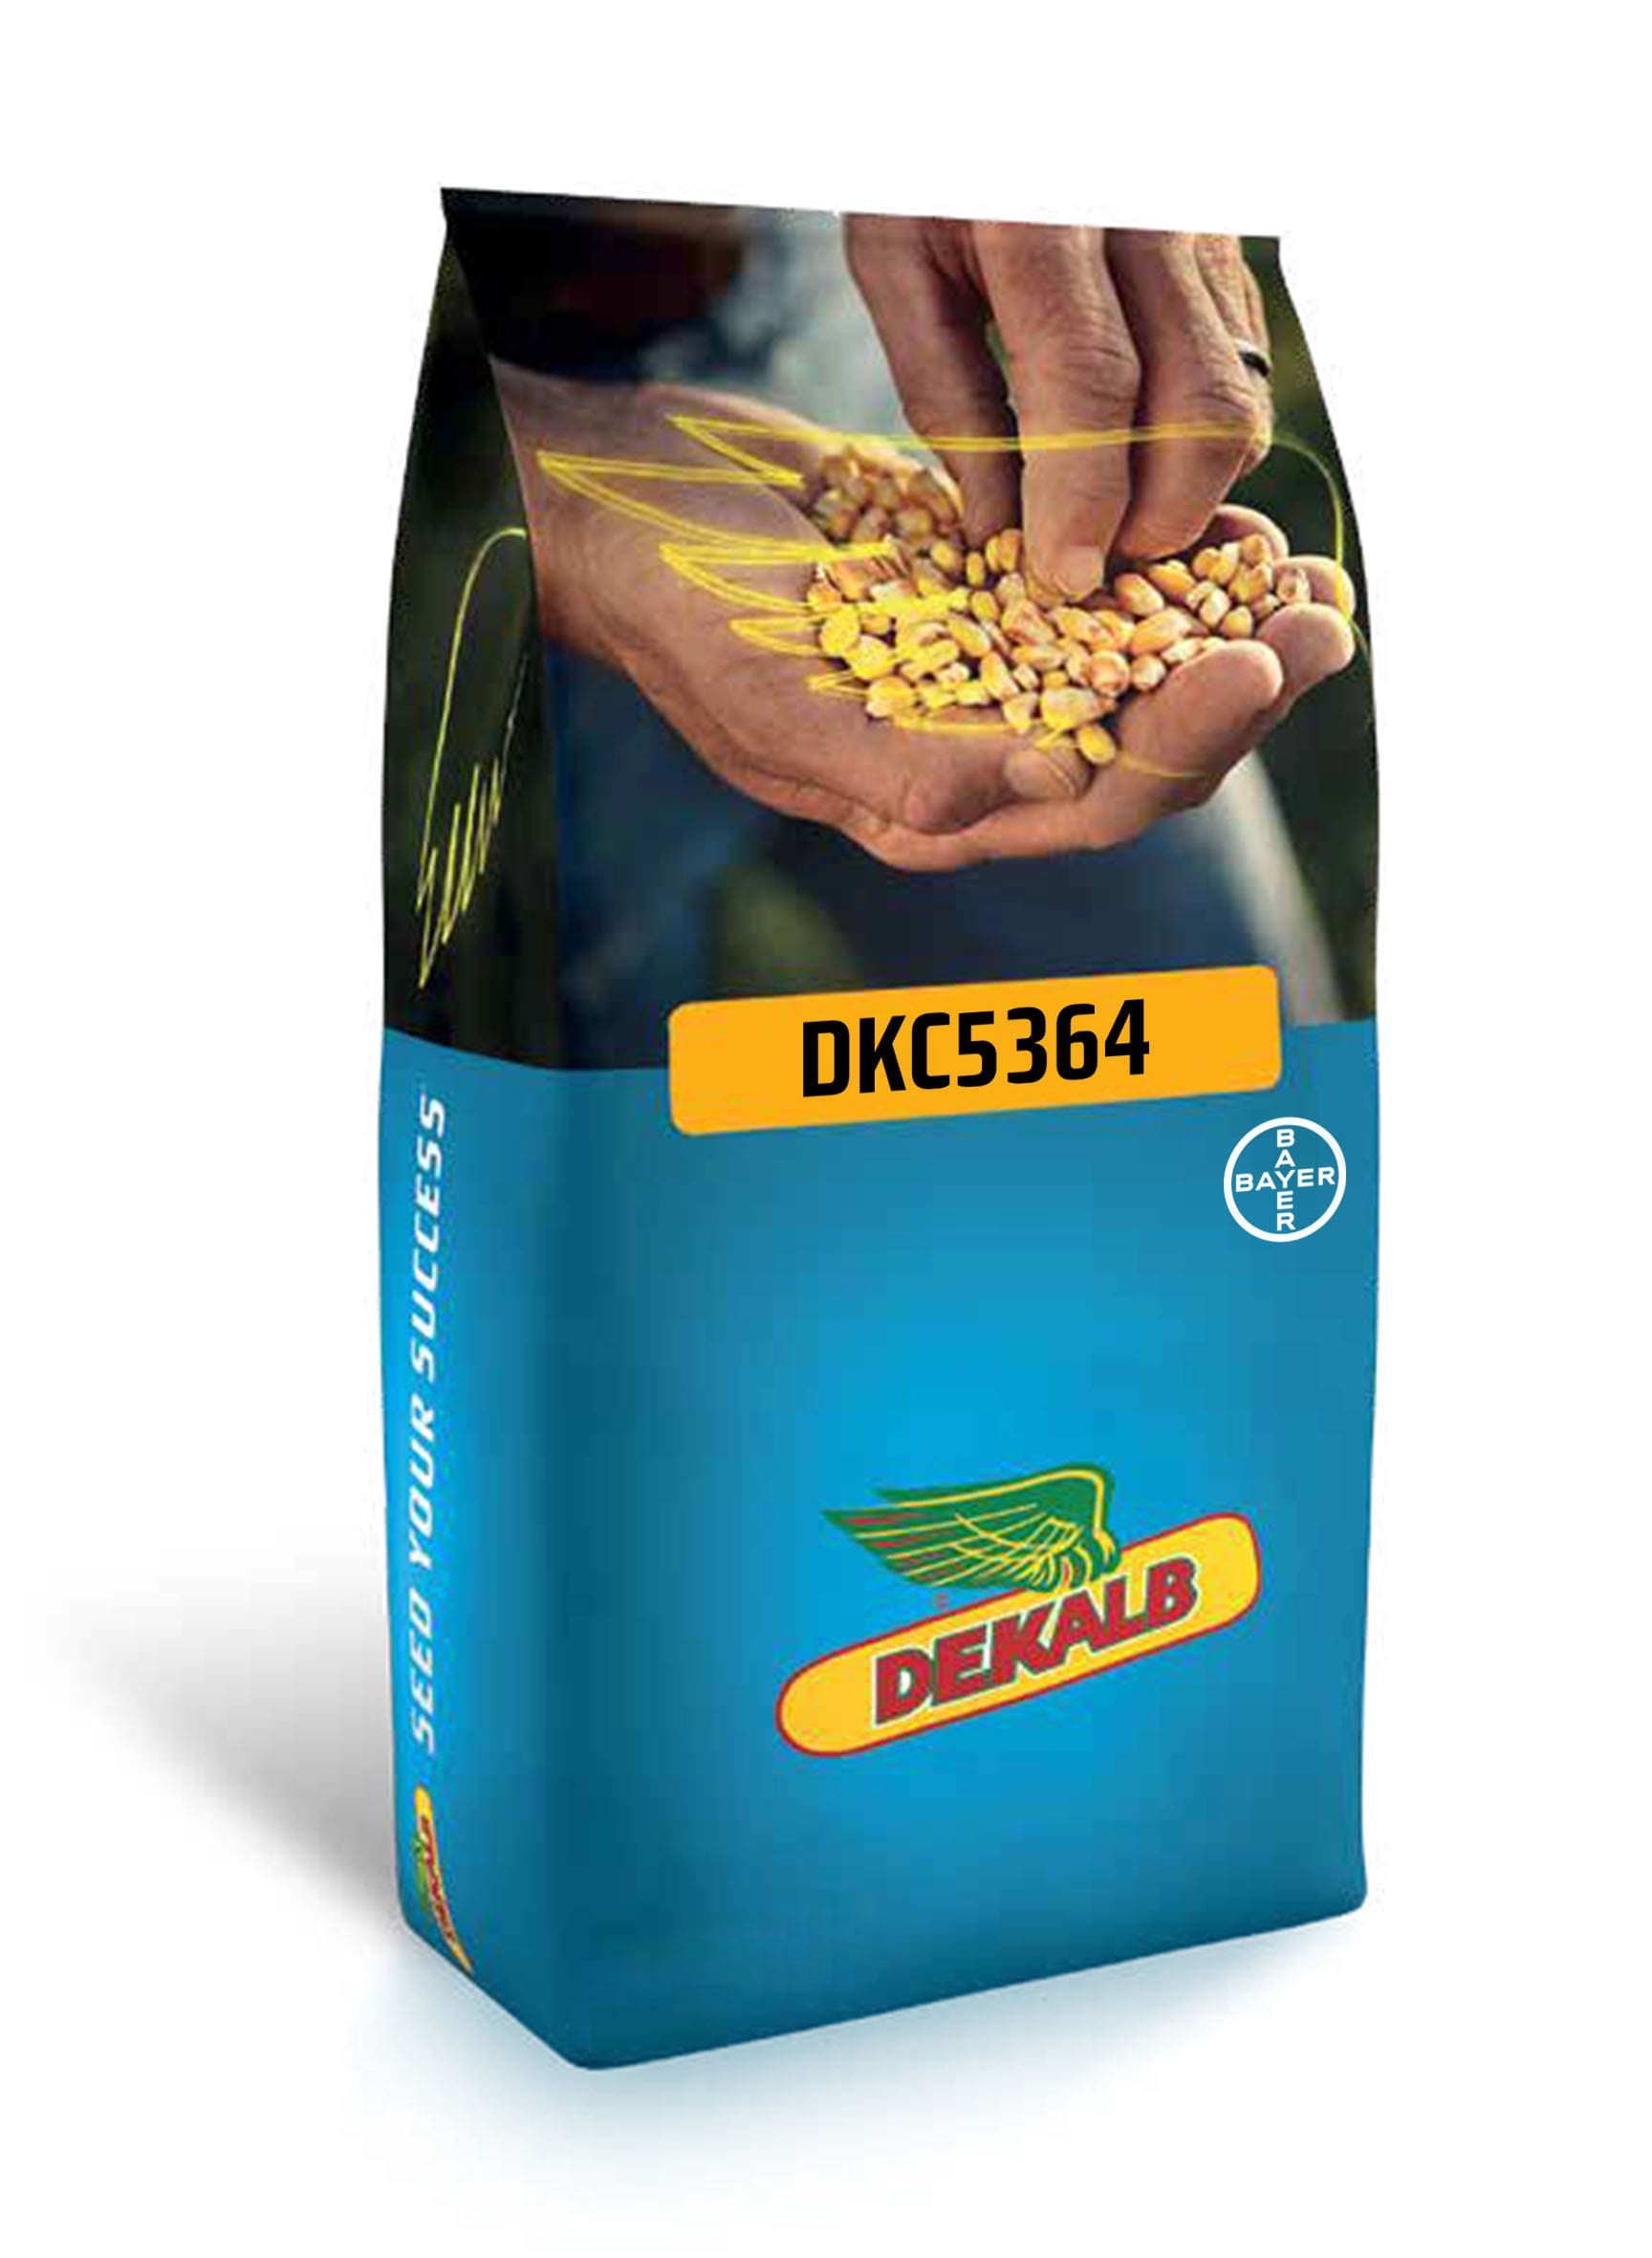 DKC5364